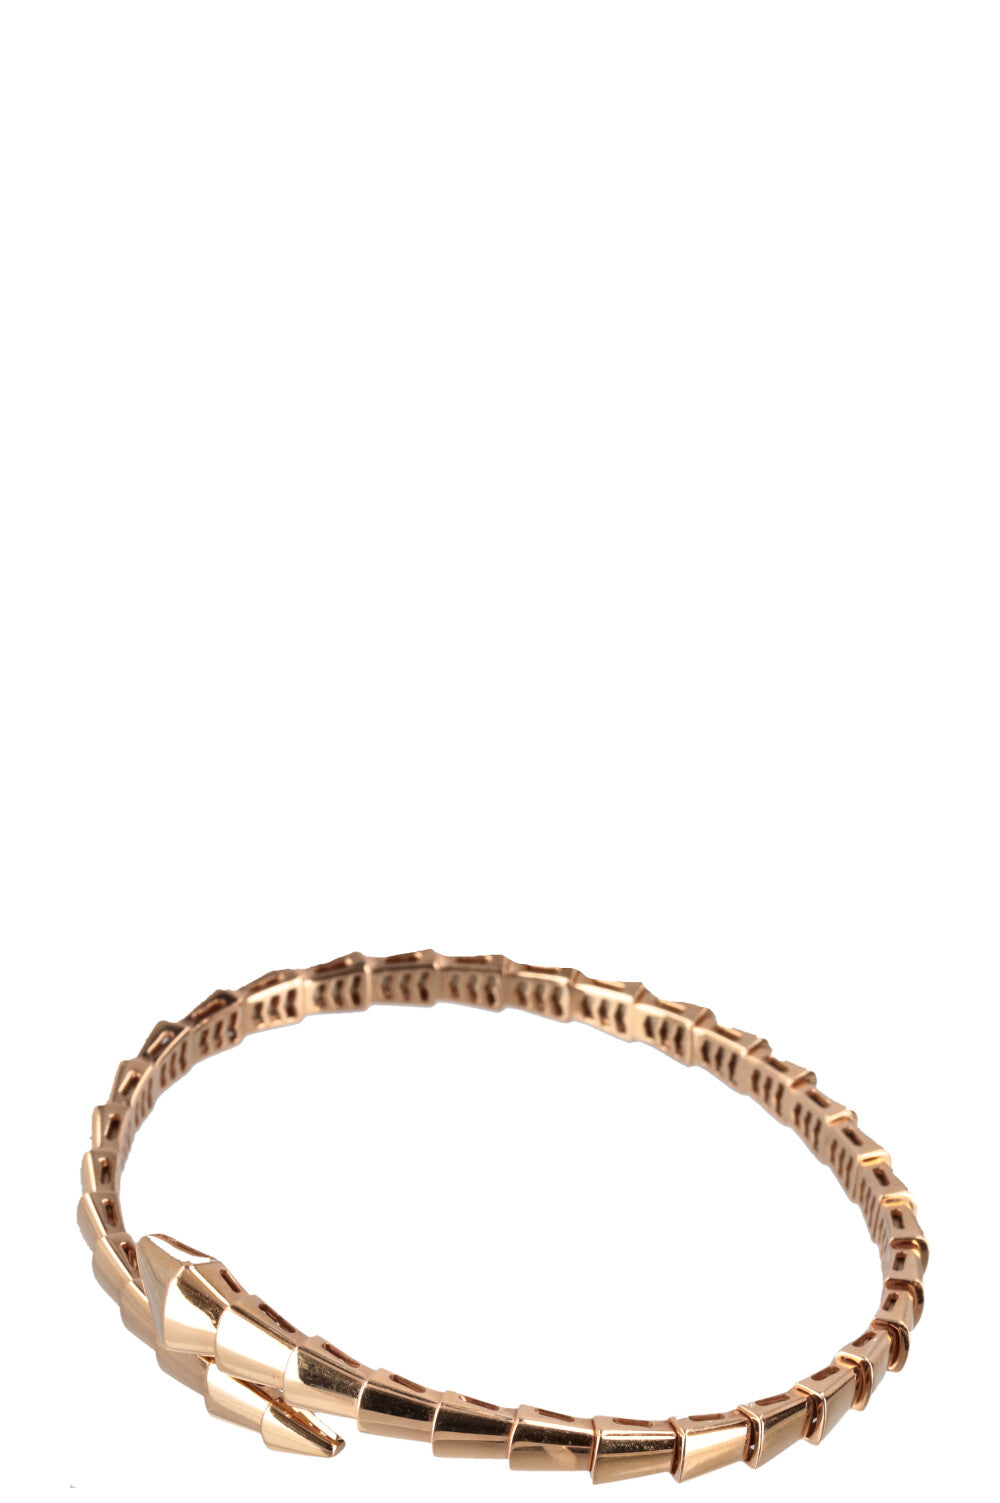 BVLGARI Serpenti Bracelet 18k Rose Gold